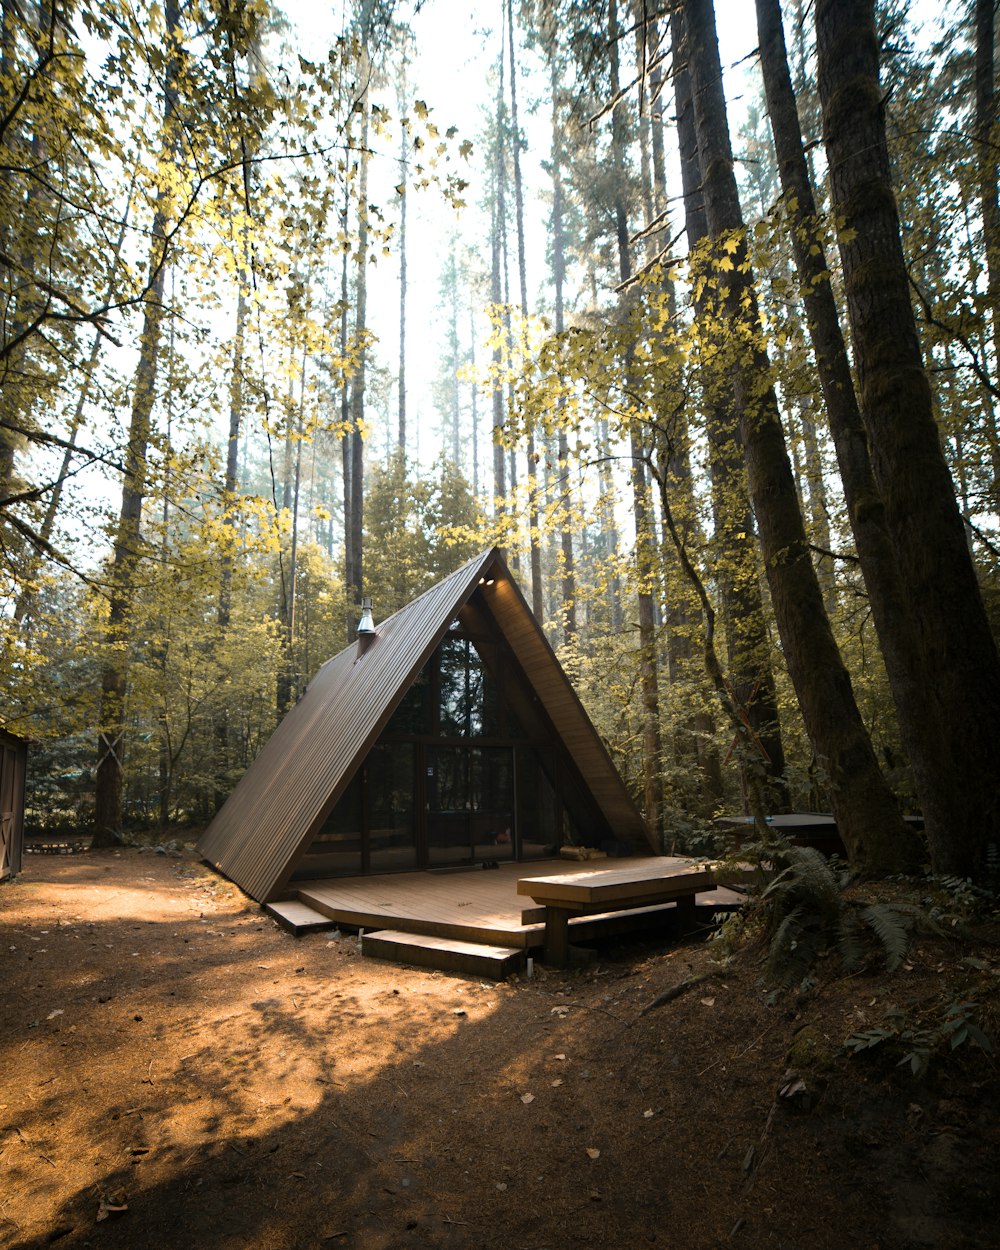 Cabaña de madera marrón en el bosque